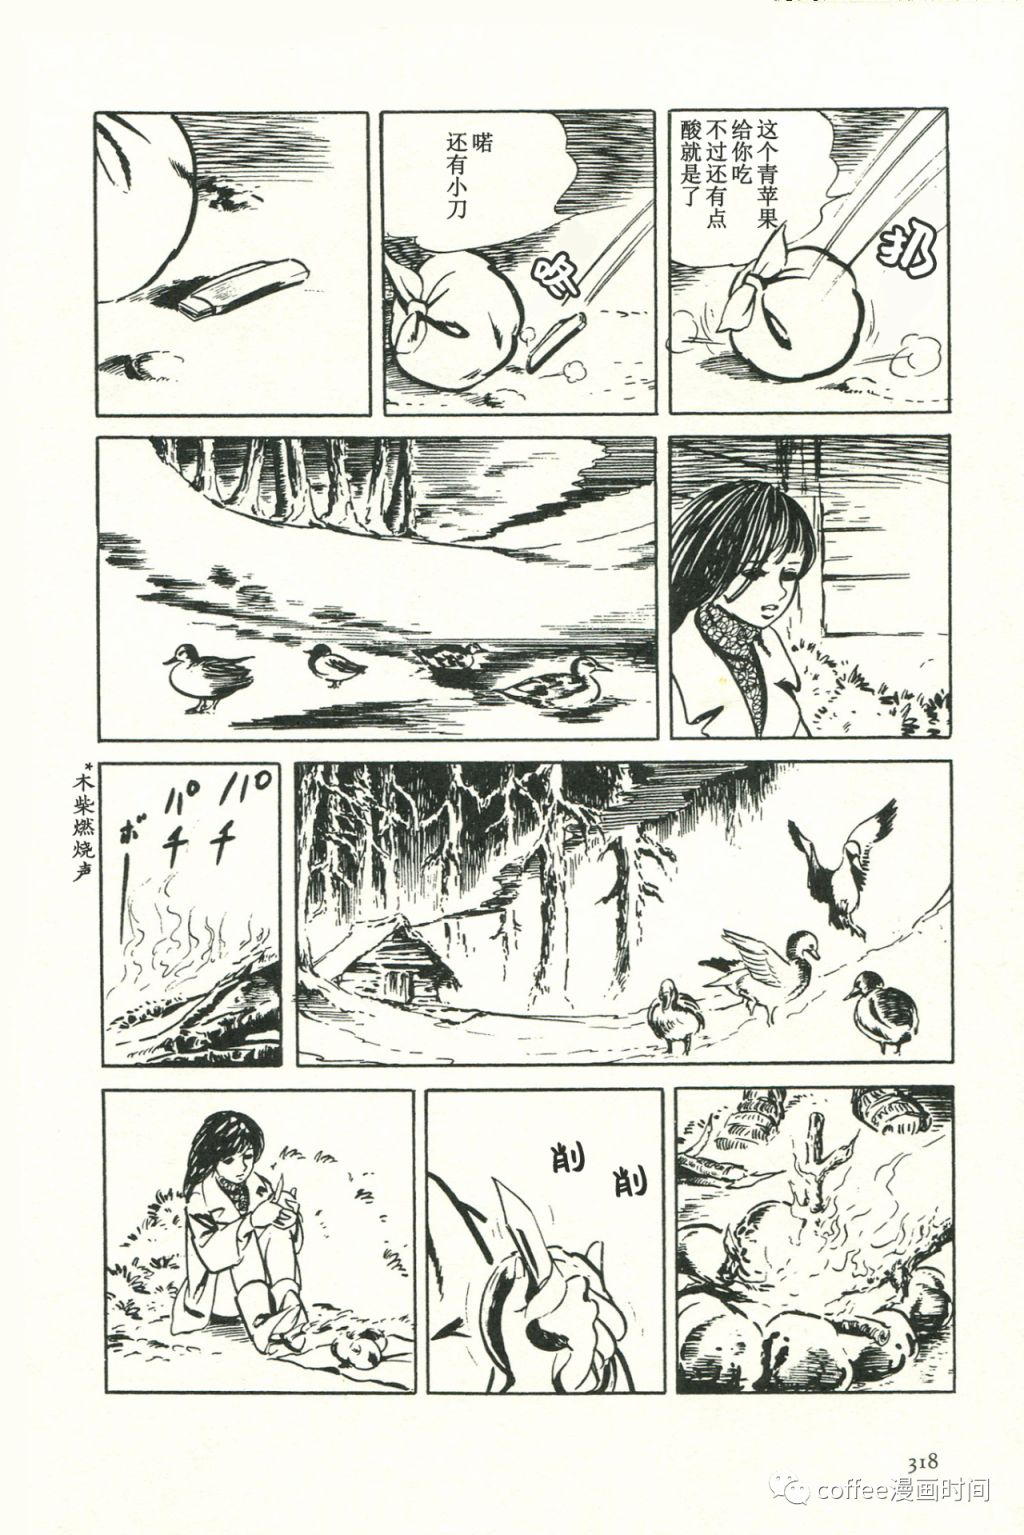 日本短篇漫畫傑作集 - 池上遼一《禁獵區》 - 2